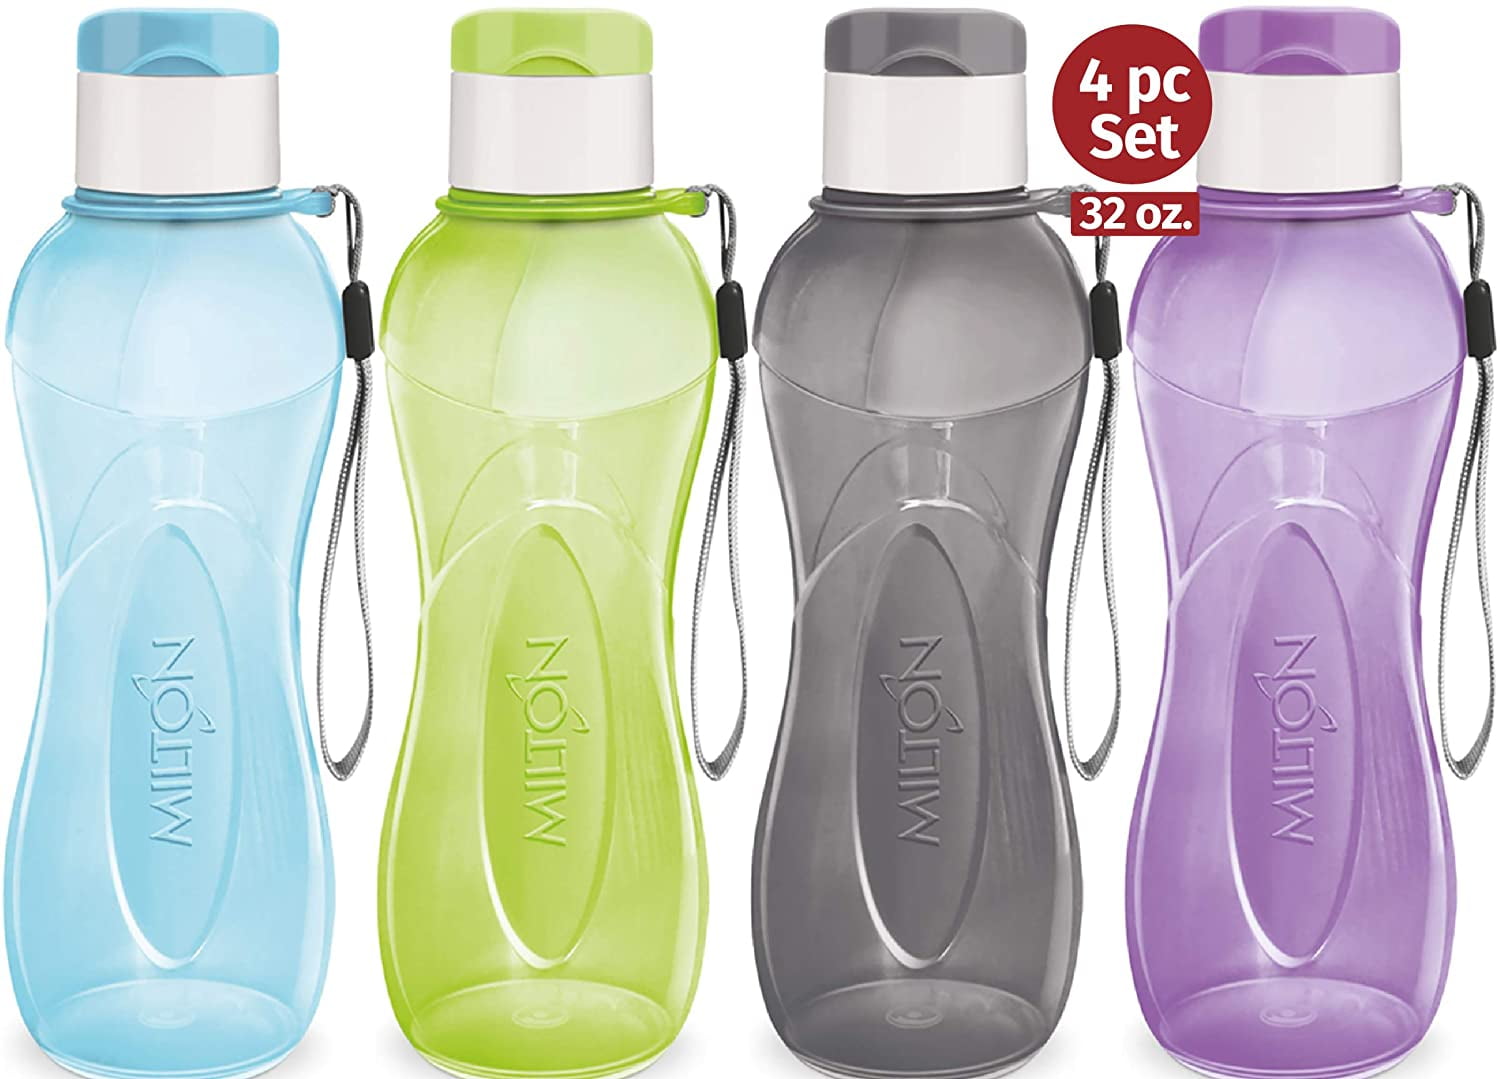 Milton 6-Pc Reusable Water Bottles Bulk Pack 12 oz Plastic Bottles with Caps, Blue, Size: 12oz